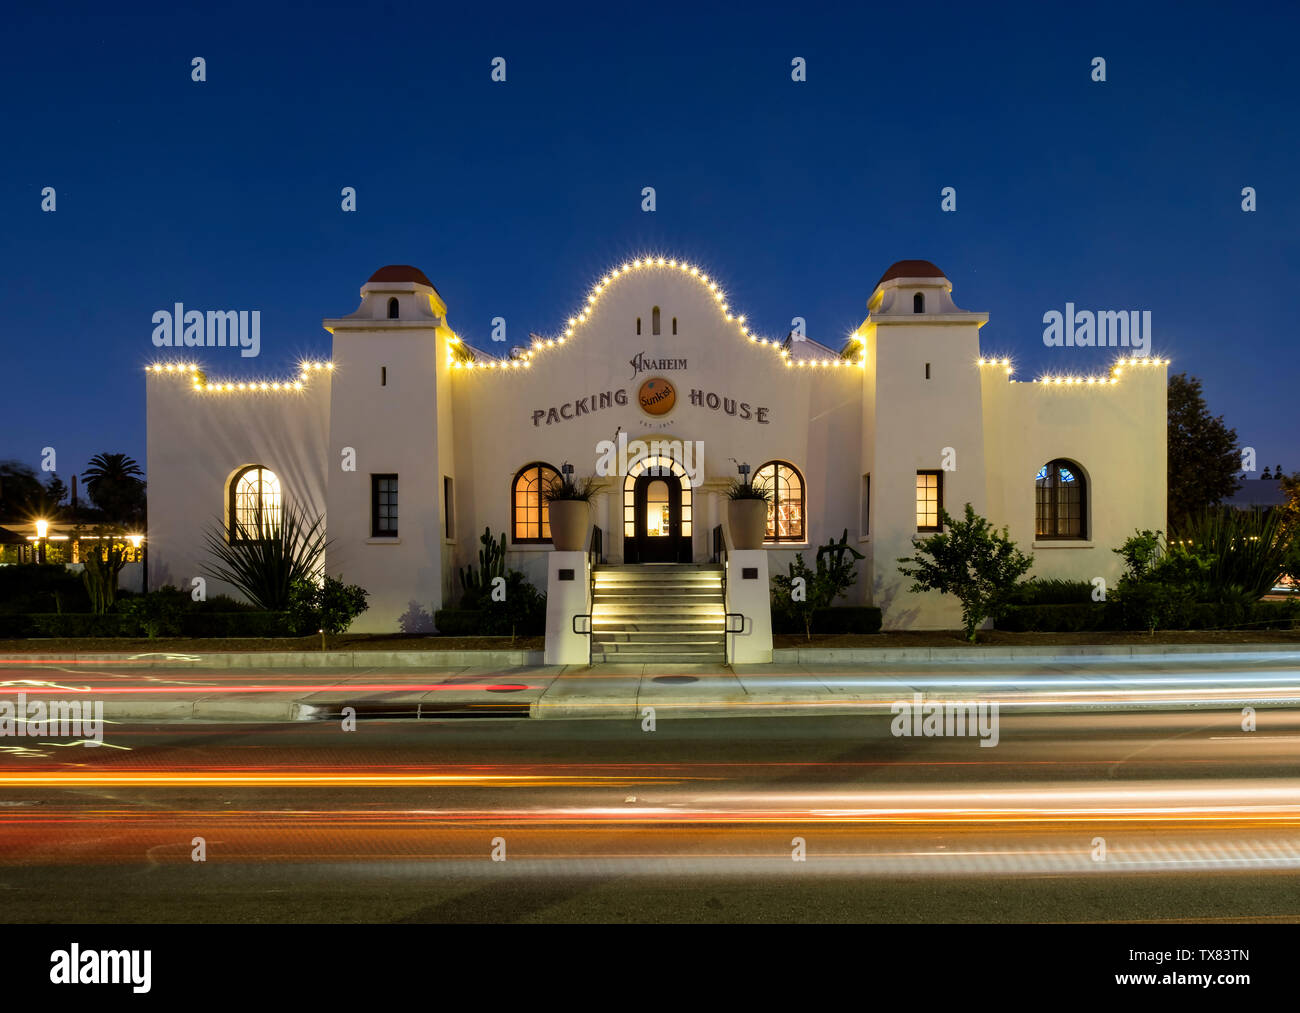 Die Verpackung Haus in der Nacht, Anaheim, Los Angeles, Kalifornien, USA Stockfoto